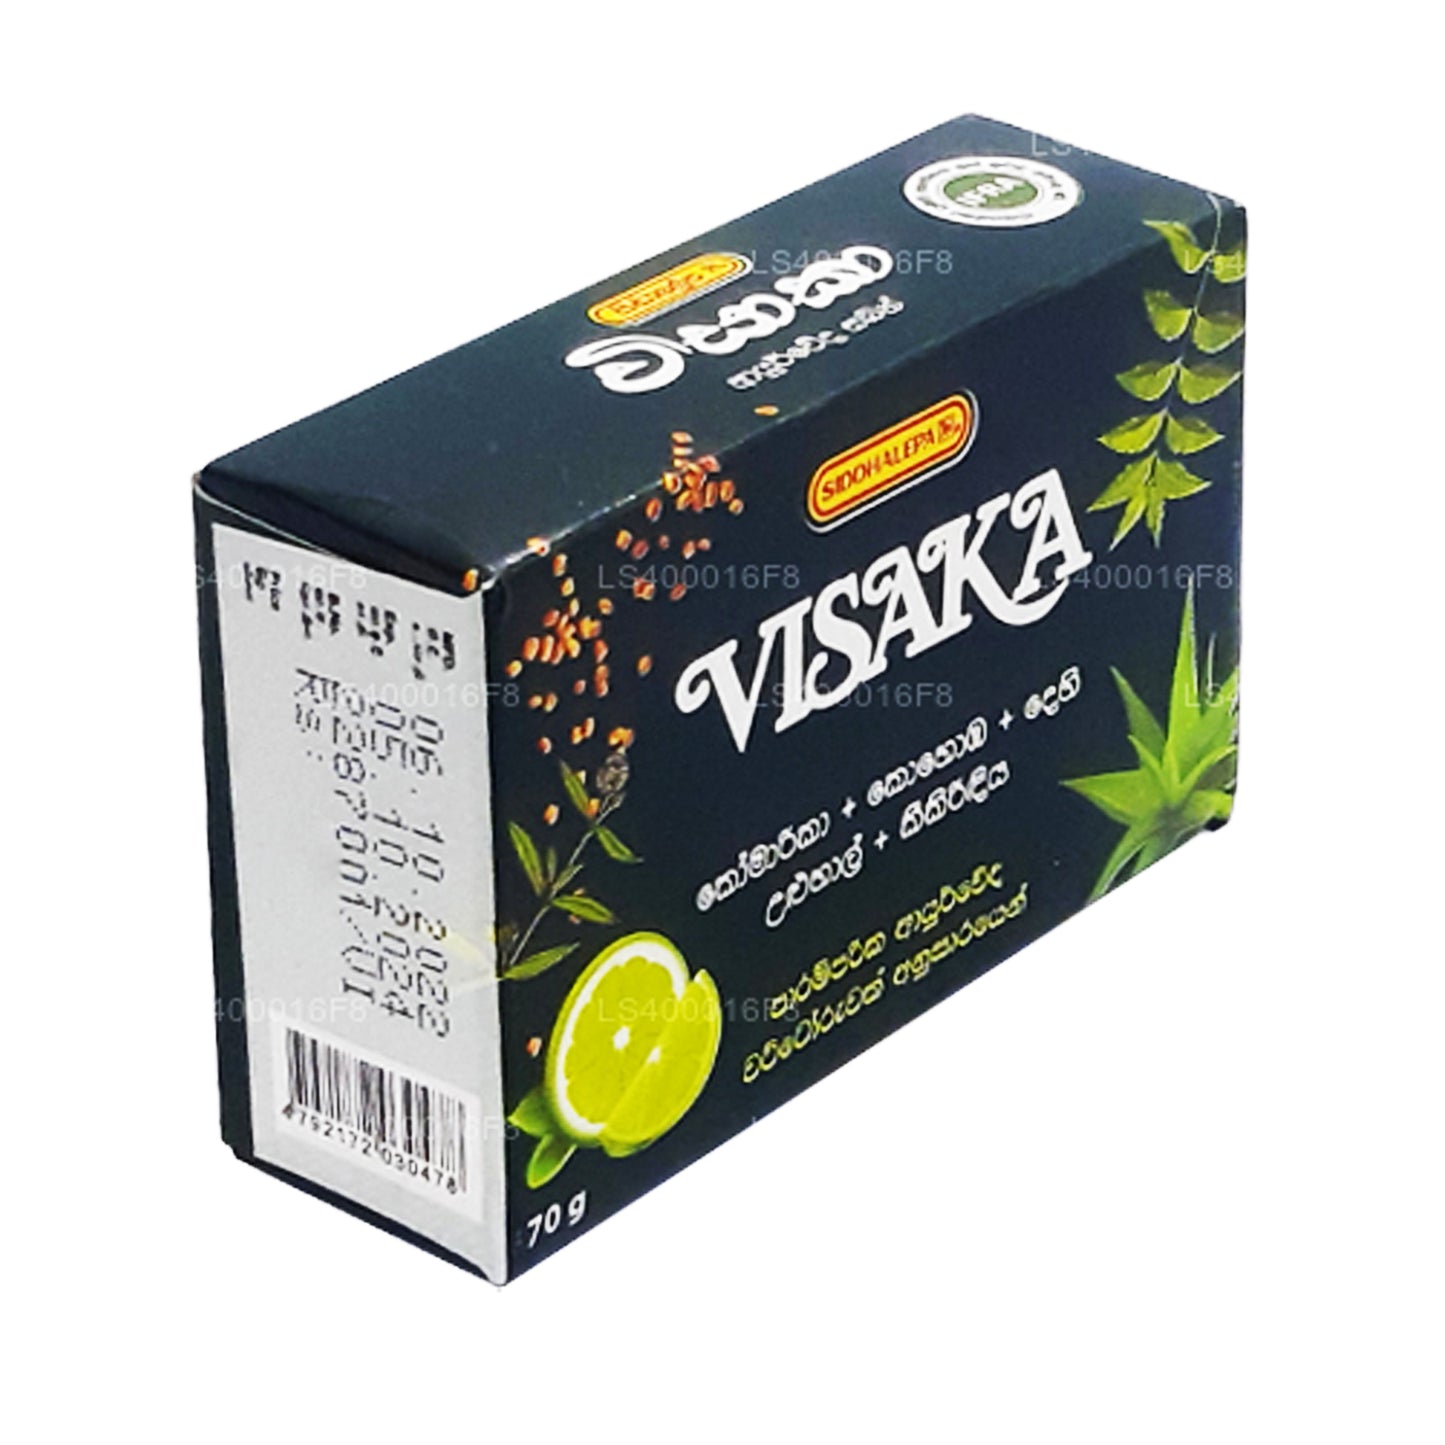 Siddhalepa Visaka-zeep (75 g)